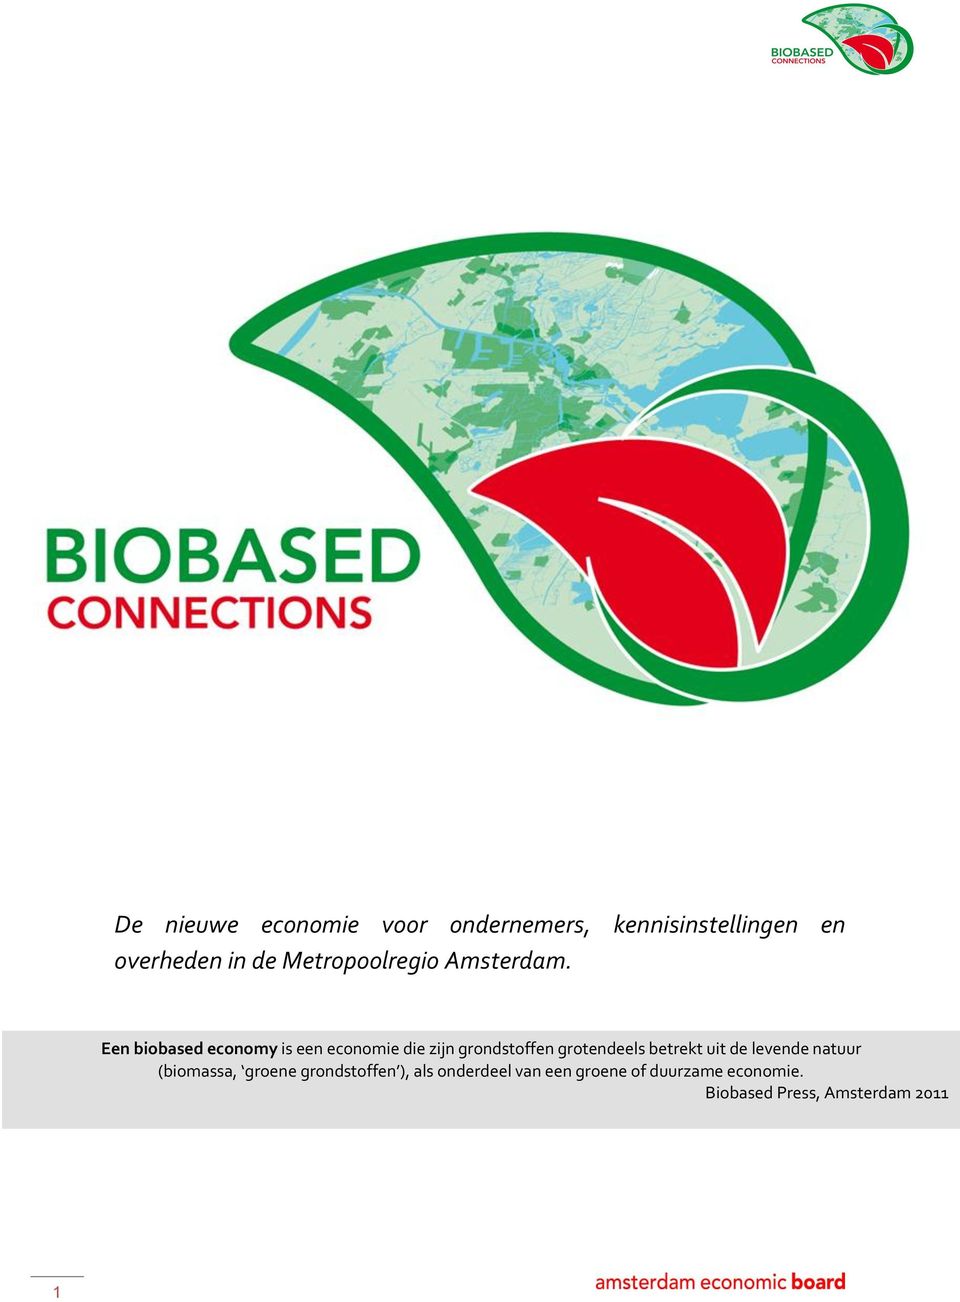 Een biobased economy is een economie die zijn grondstoffen grotendeels betrekt